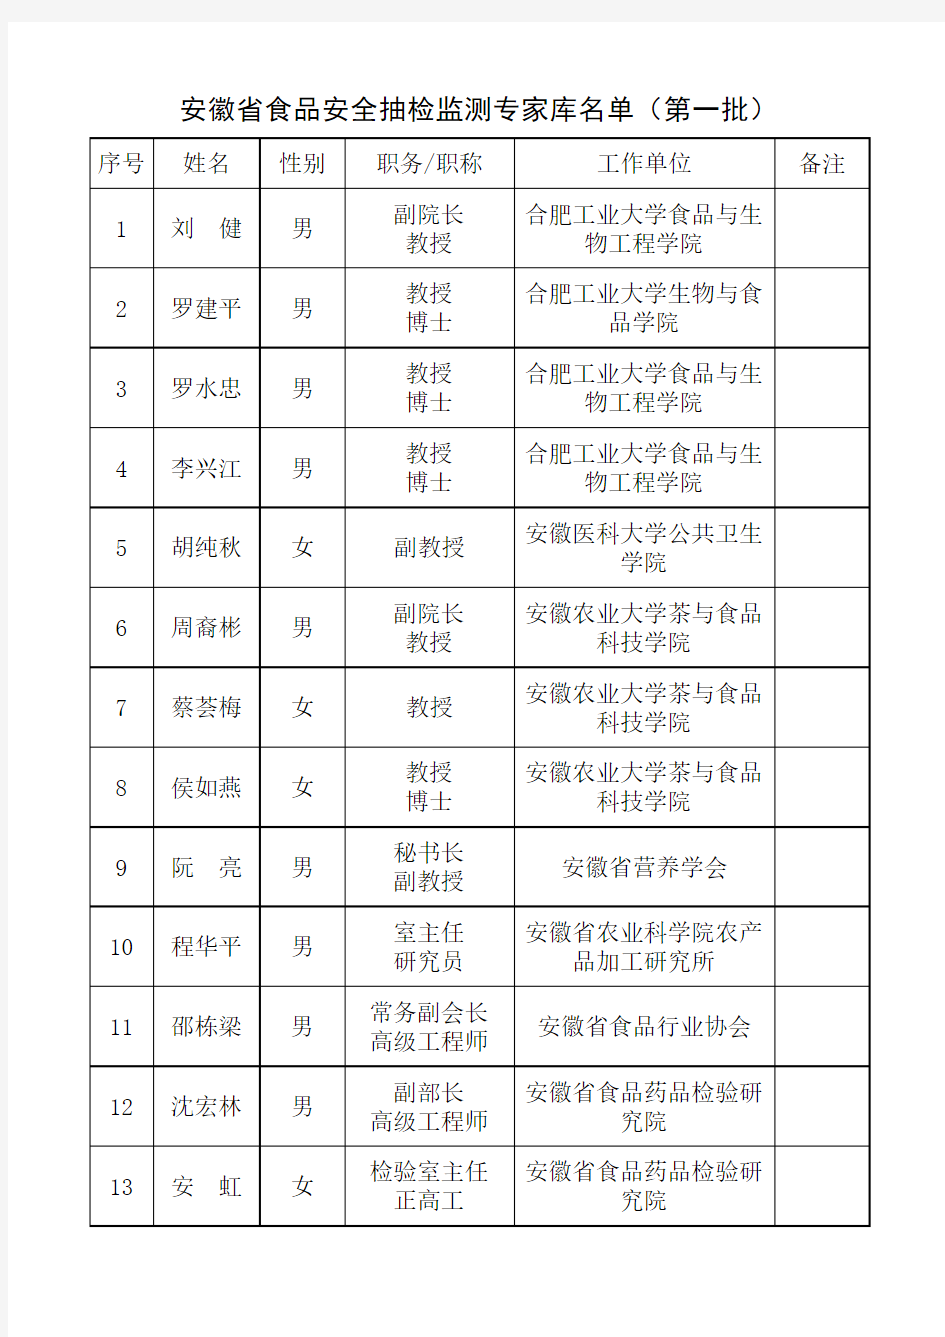 安徽省食品安全抽检监测专家库名单(第一批)